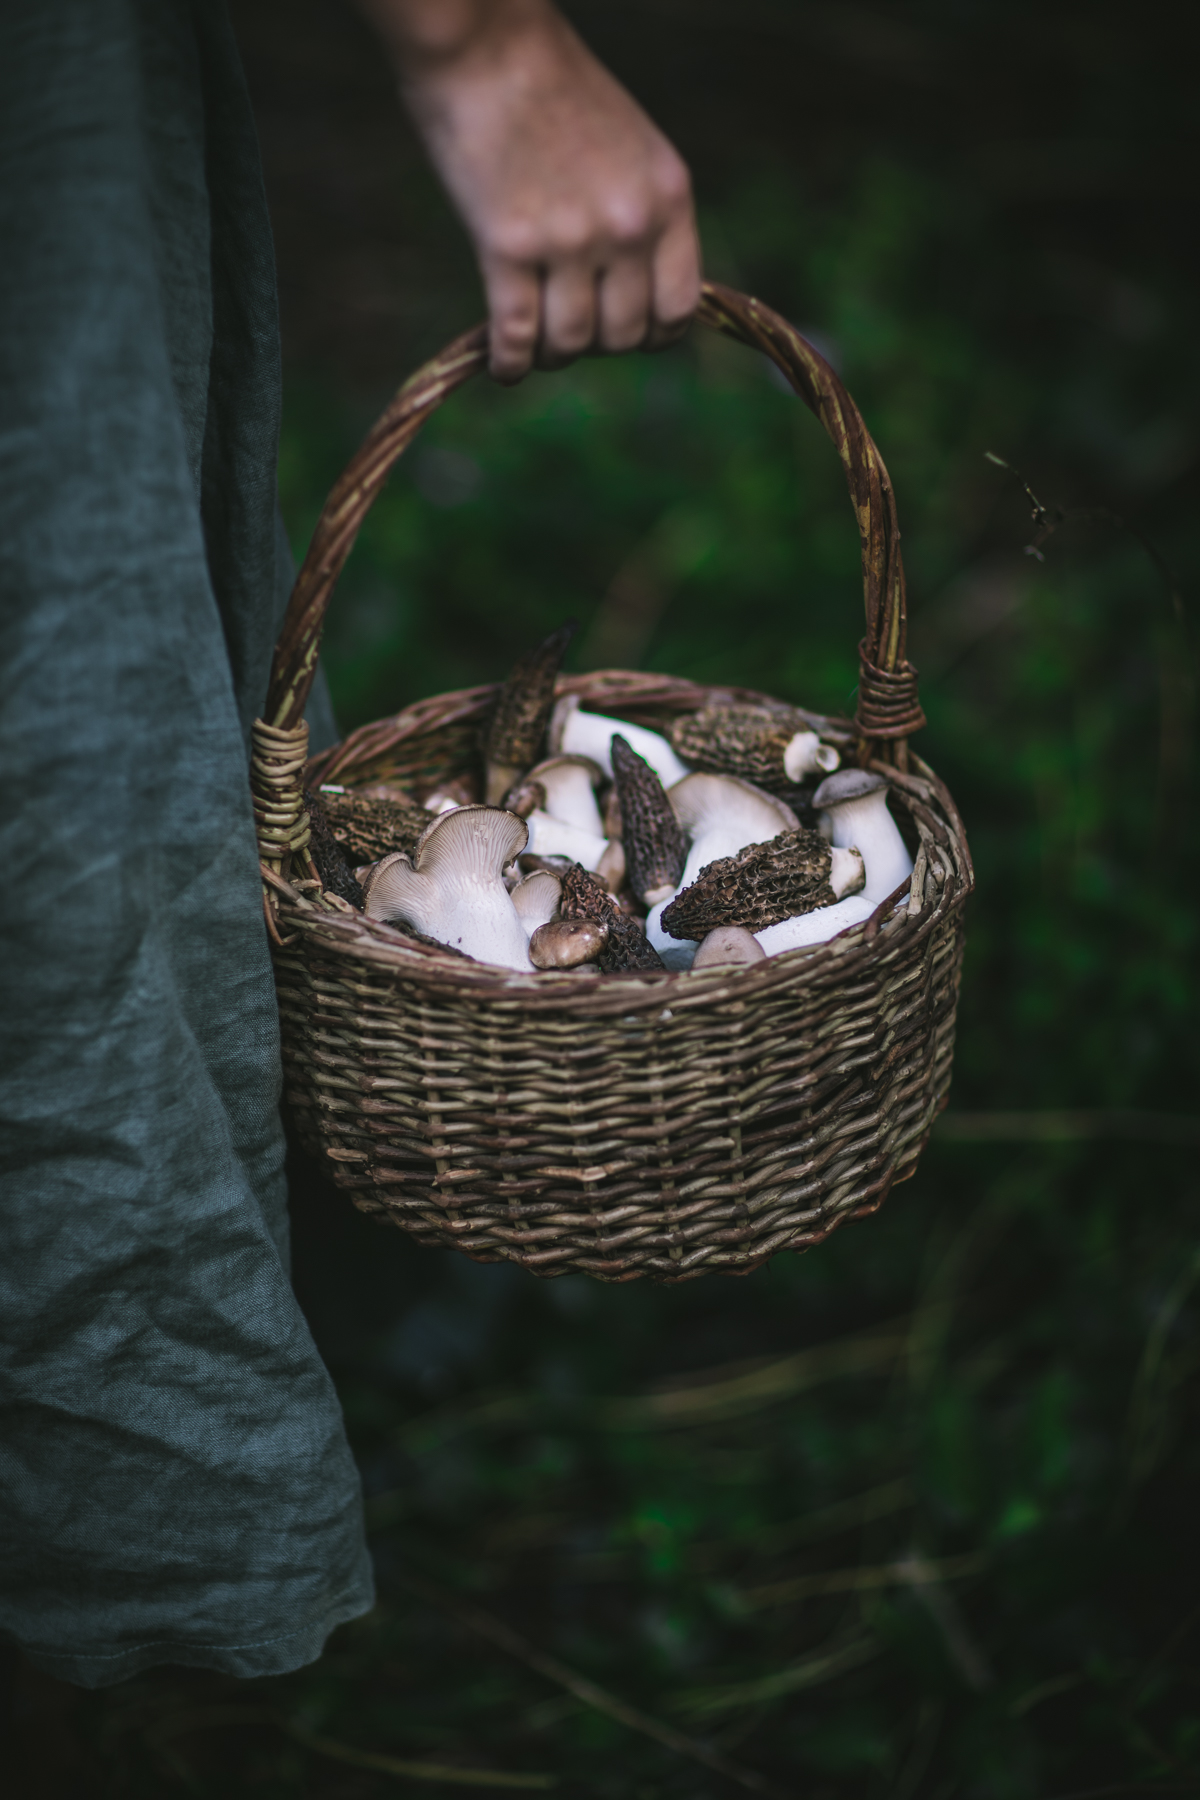 Mushrooms in a Basket